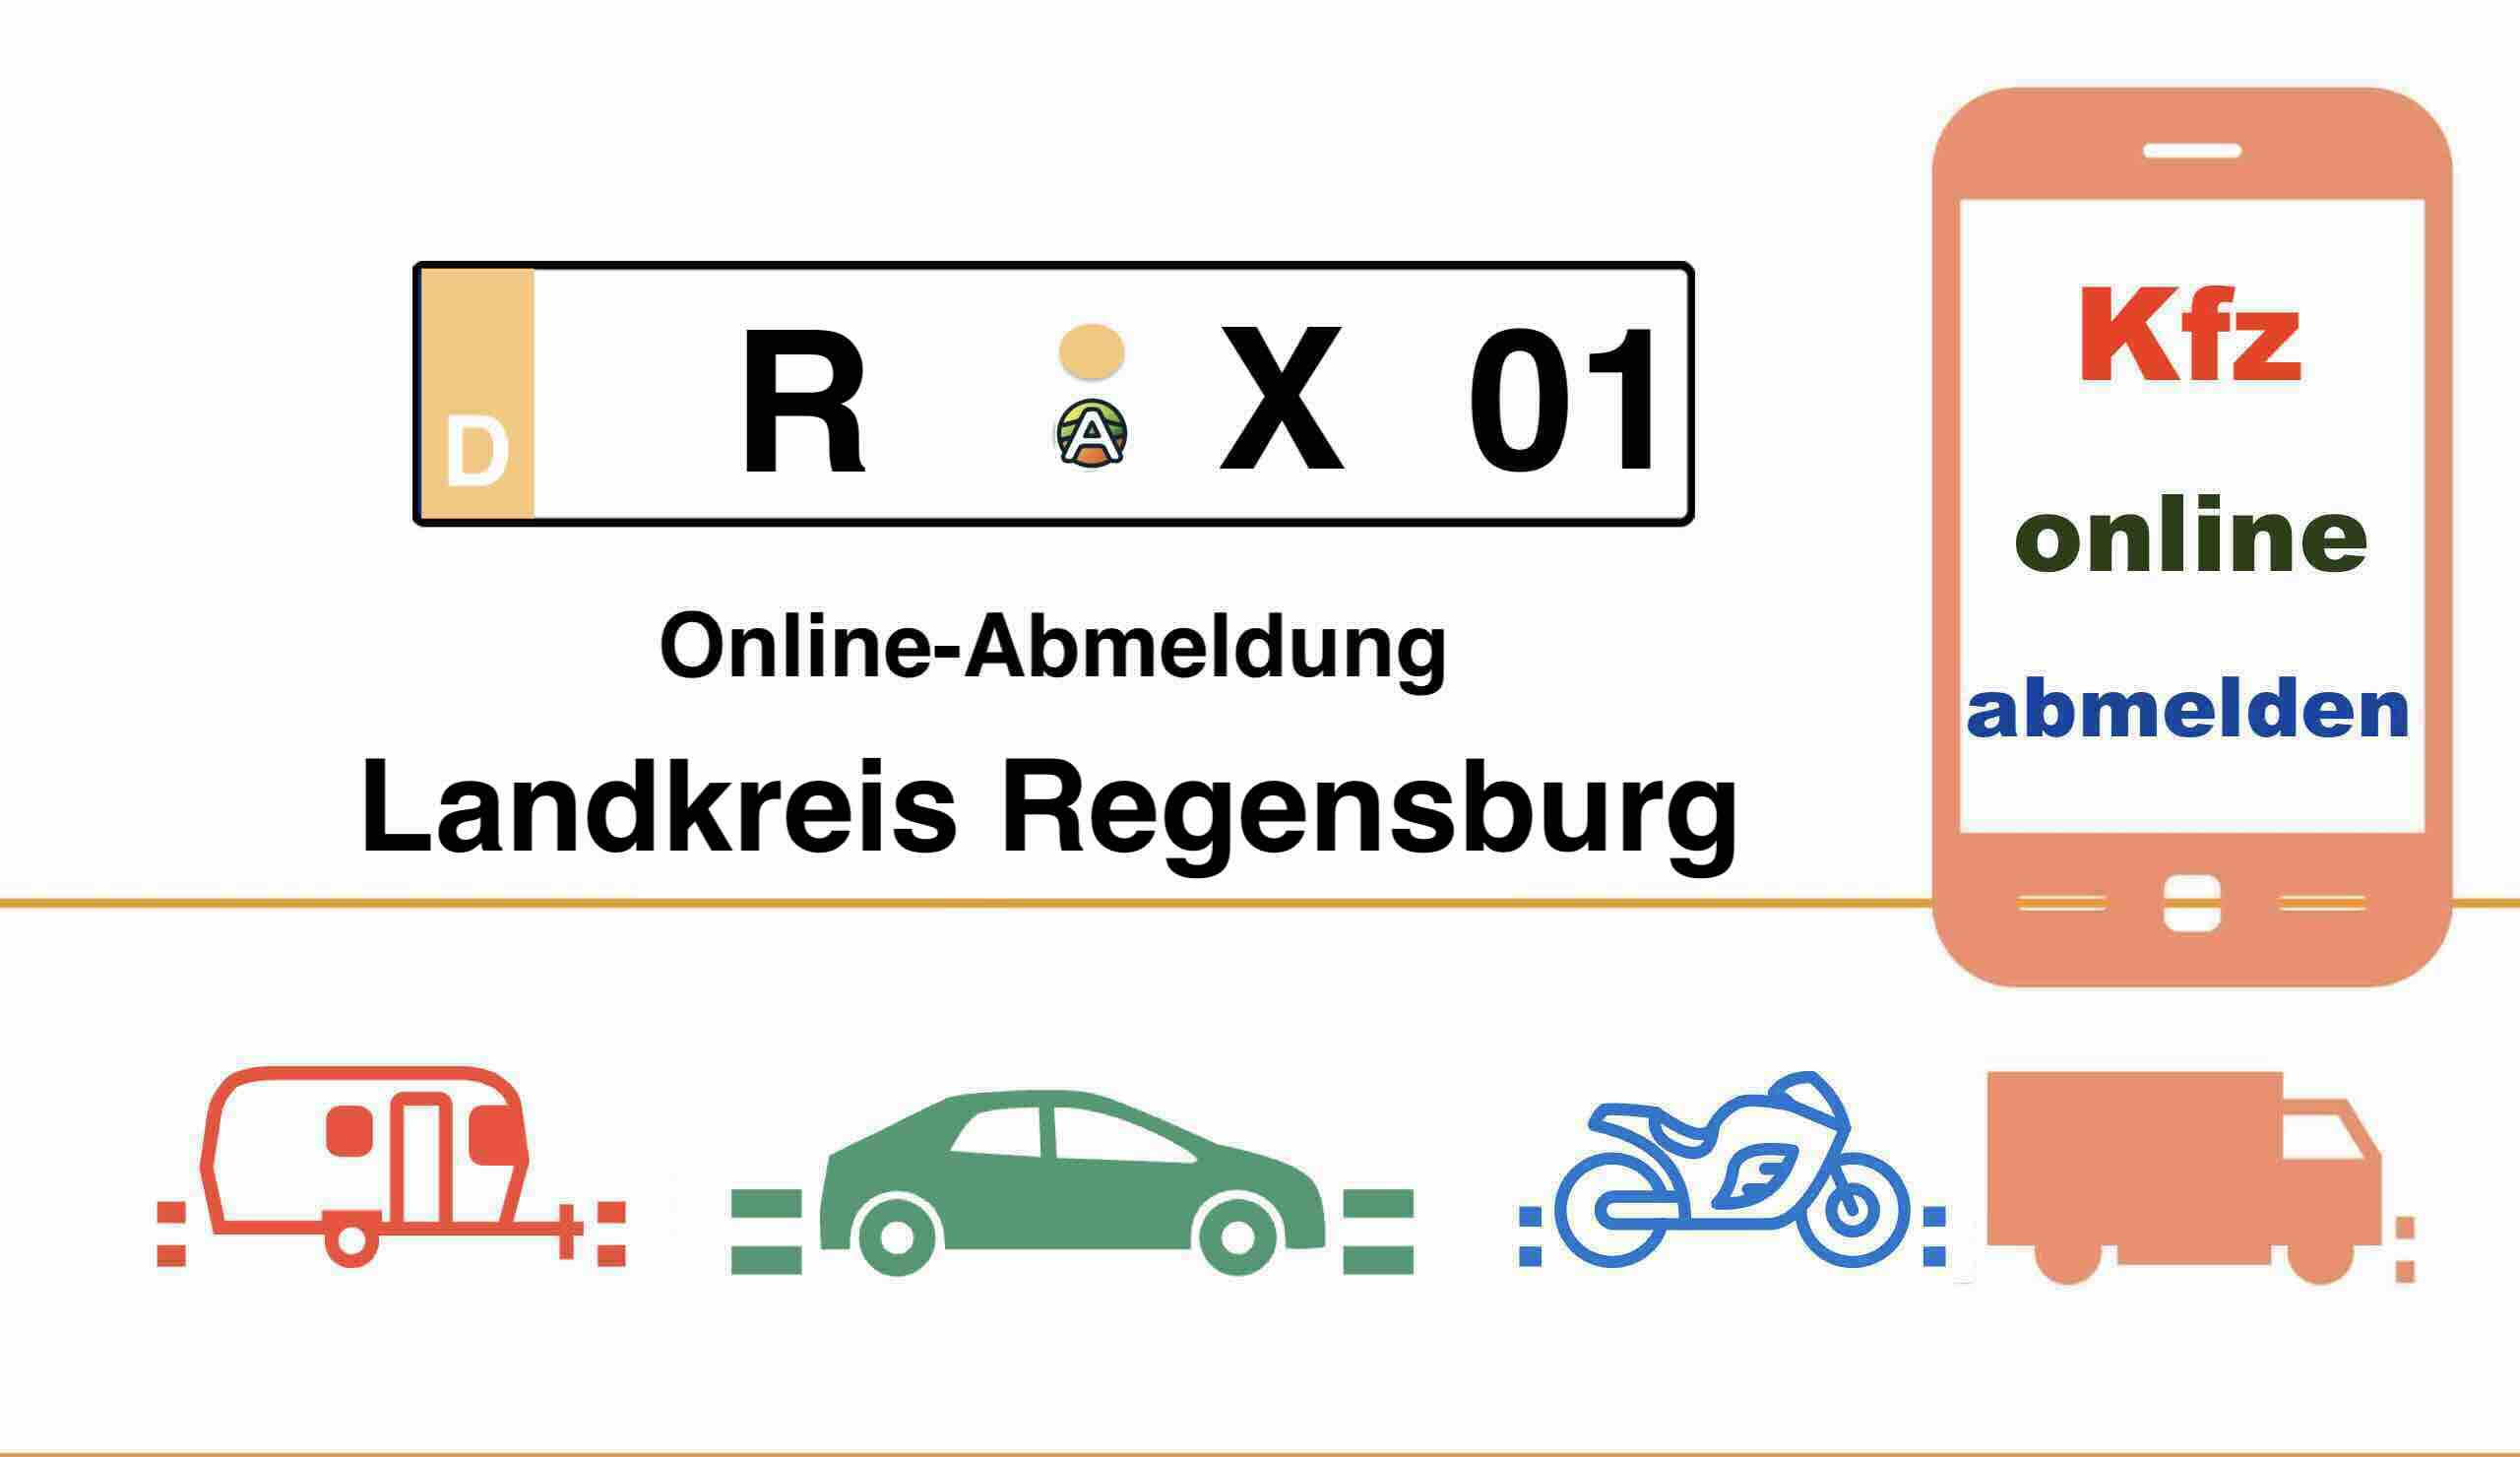 Kfz Online-Abmeldung im Landkreis Regensburg 